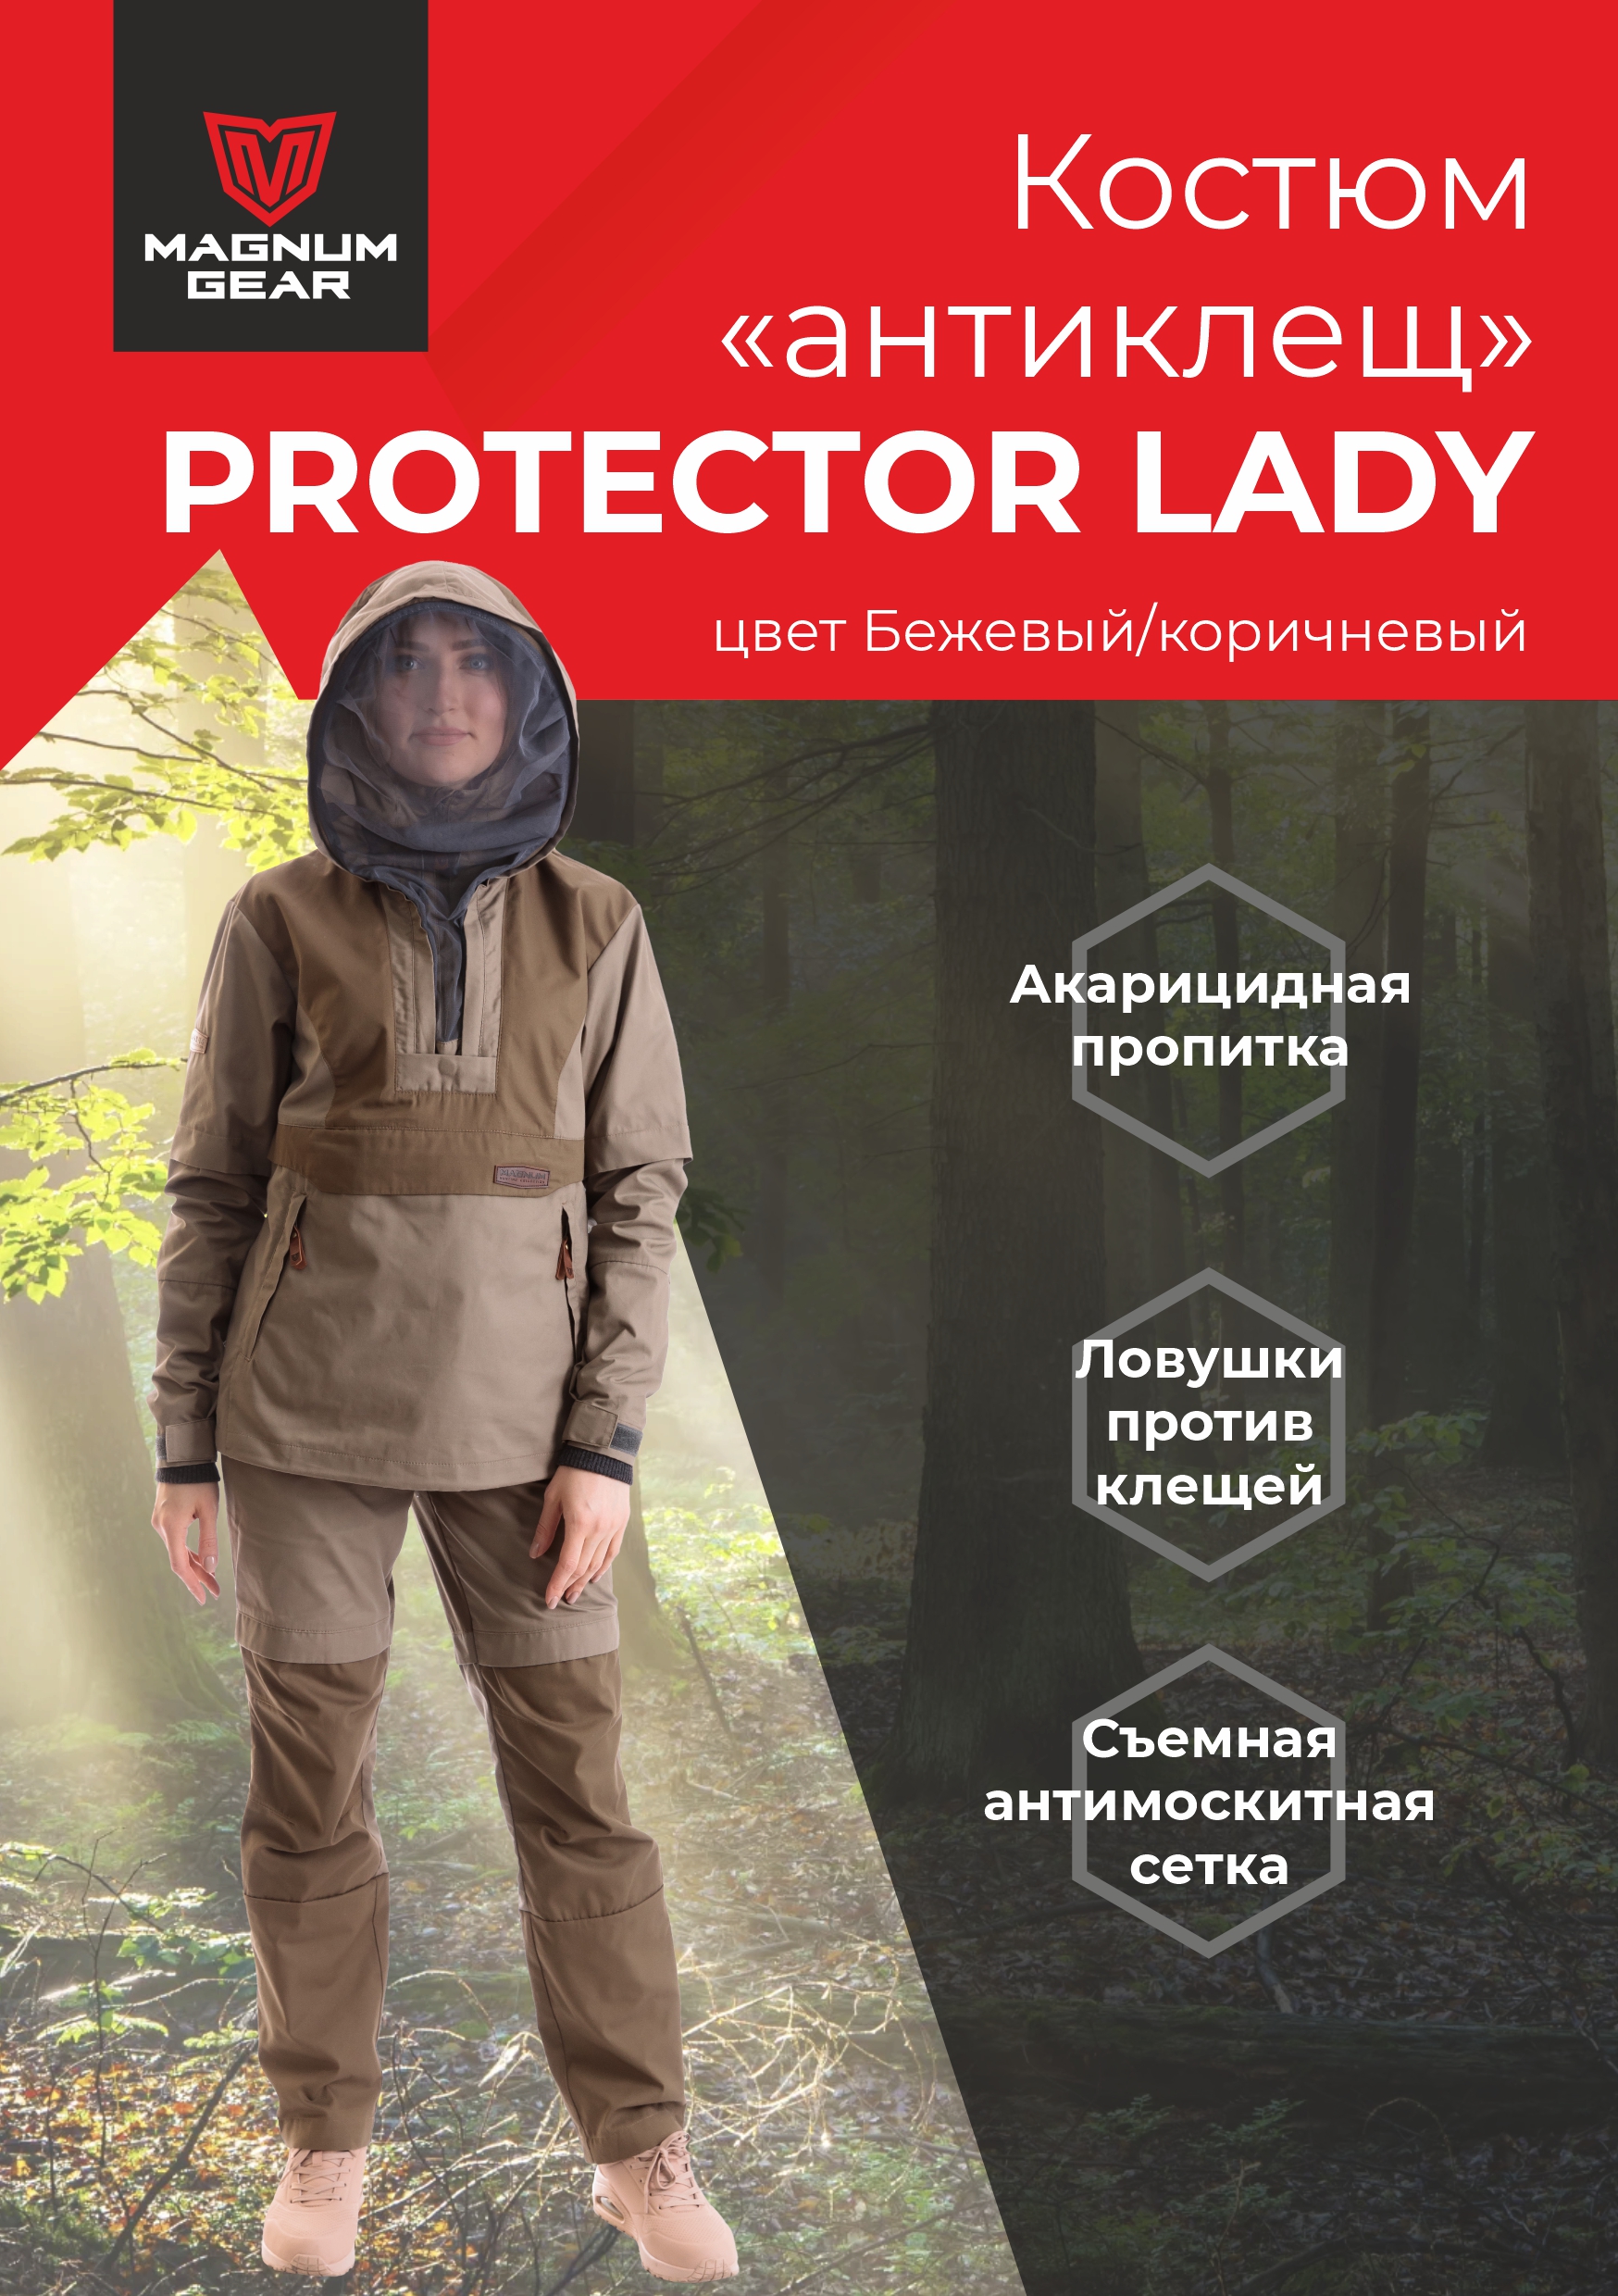 Костюм женский Magnum Gear, PROTECTOR LADY, бежевый/коричневый, размер XXL, рост 158-164